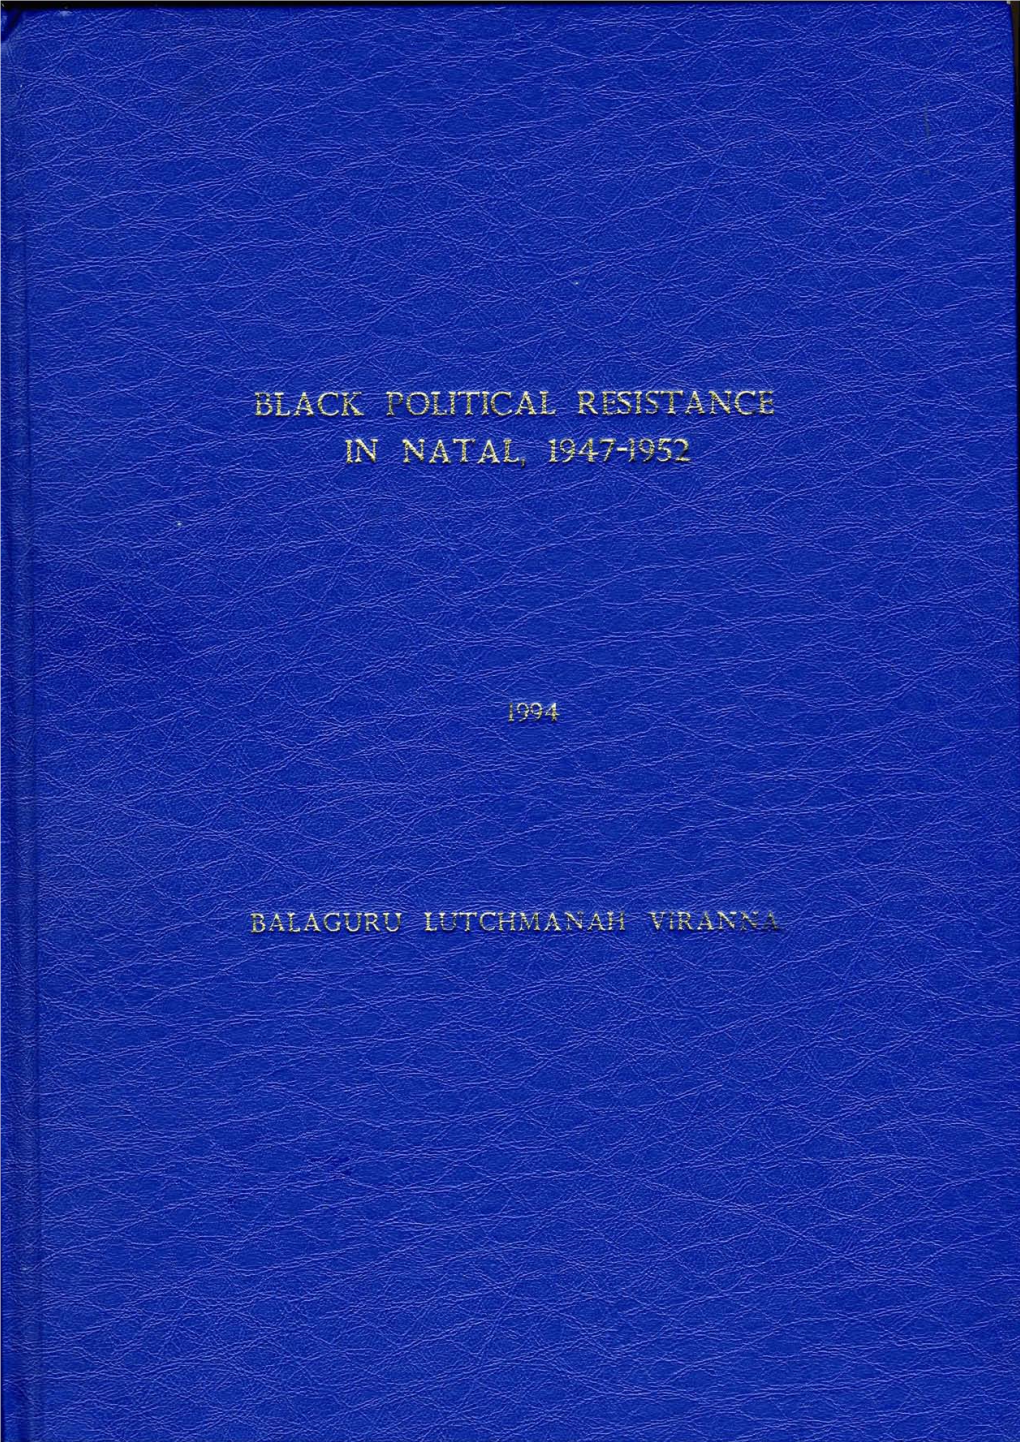 Black Political Resistance in Natal, 1947-1952